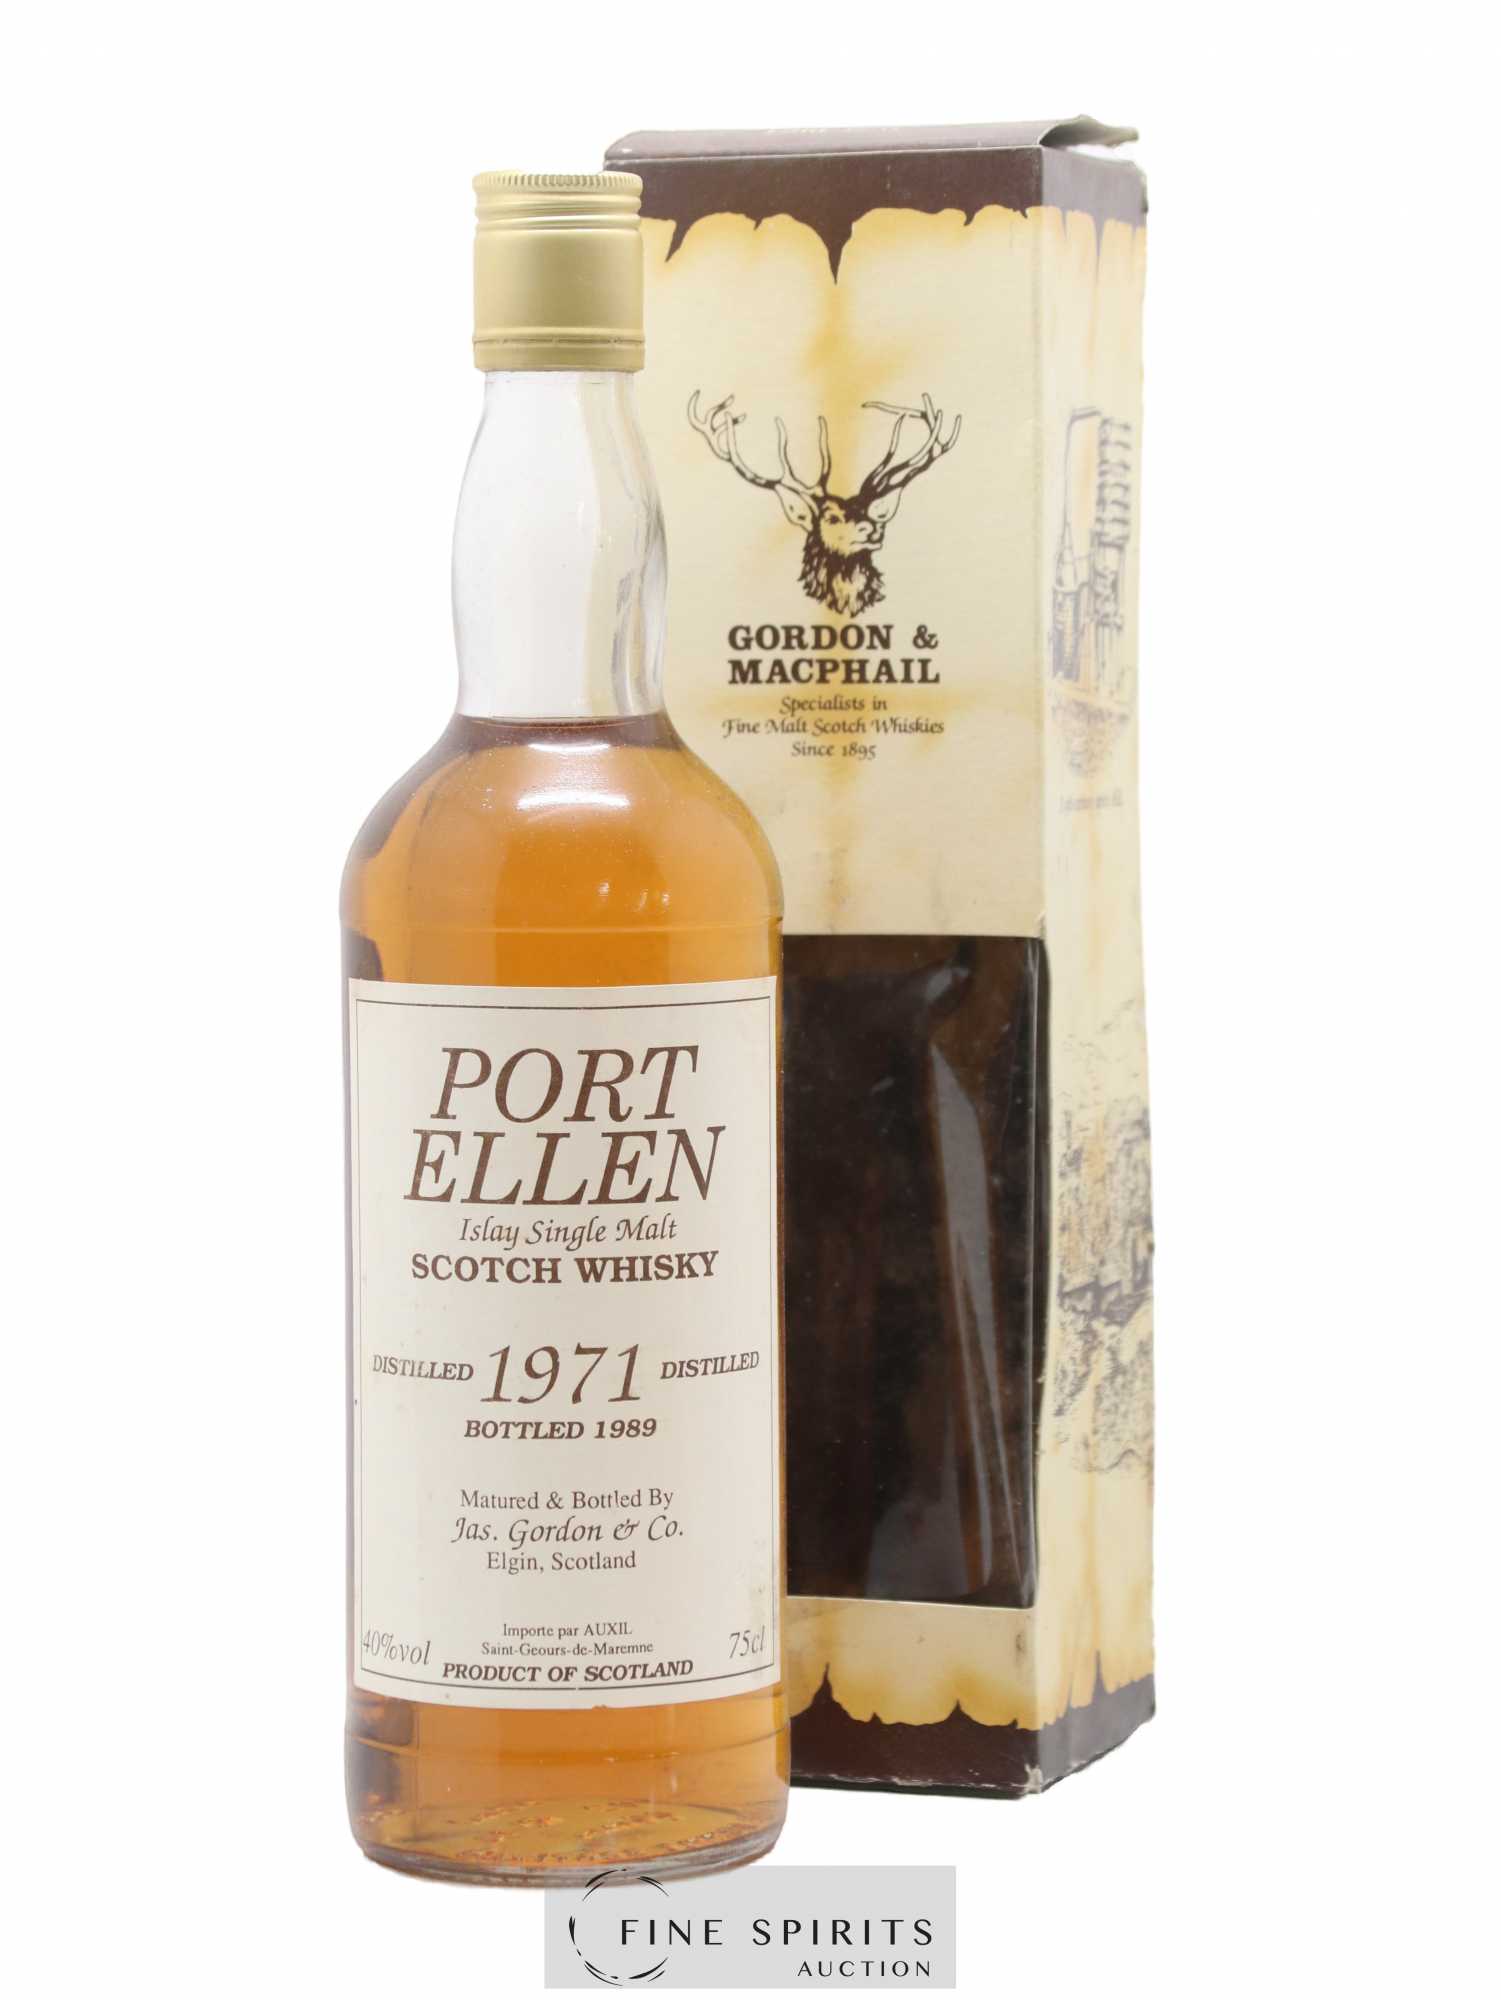 Port Ellen 1971 Jas. Gordon & Co. bottled 1989 